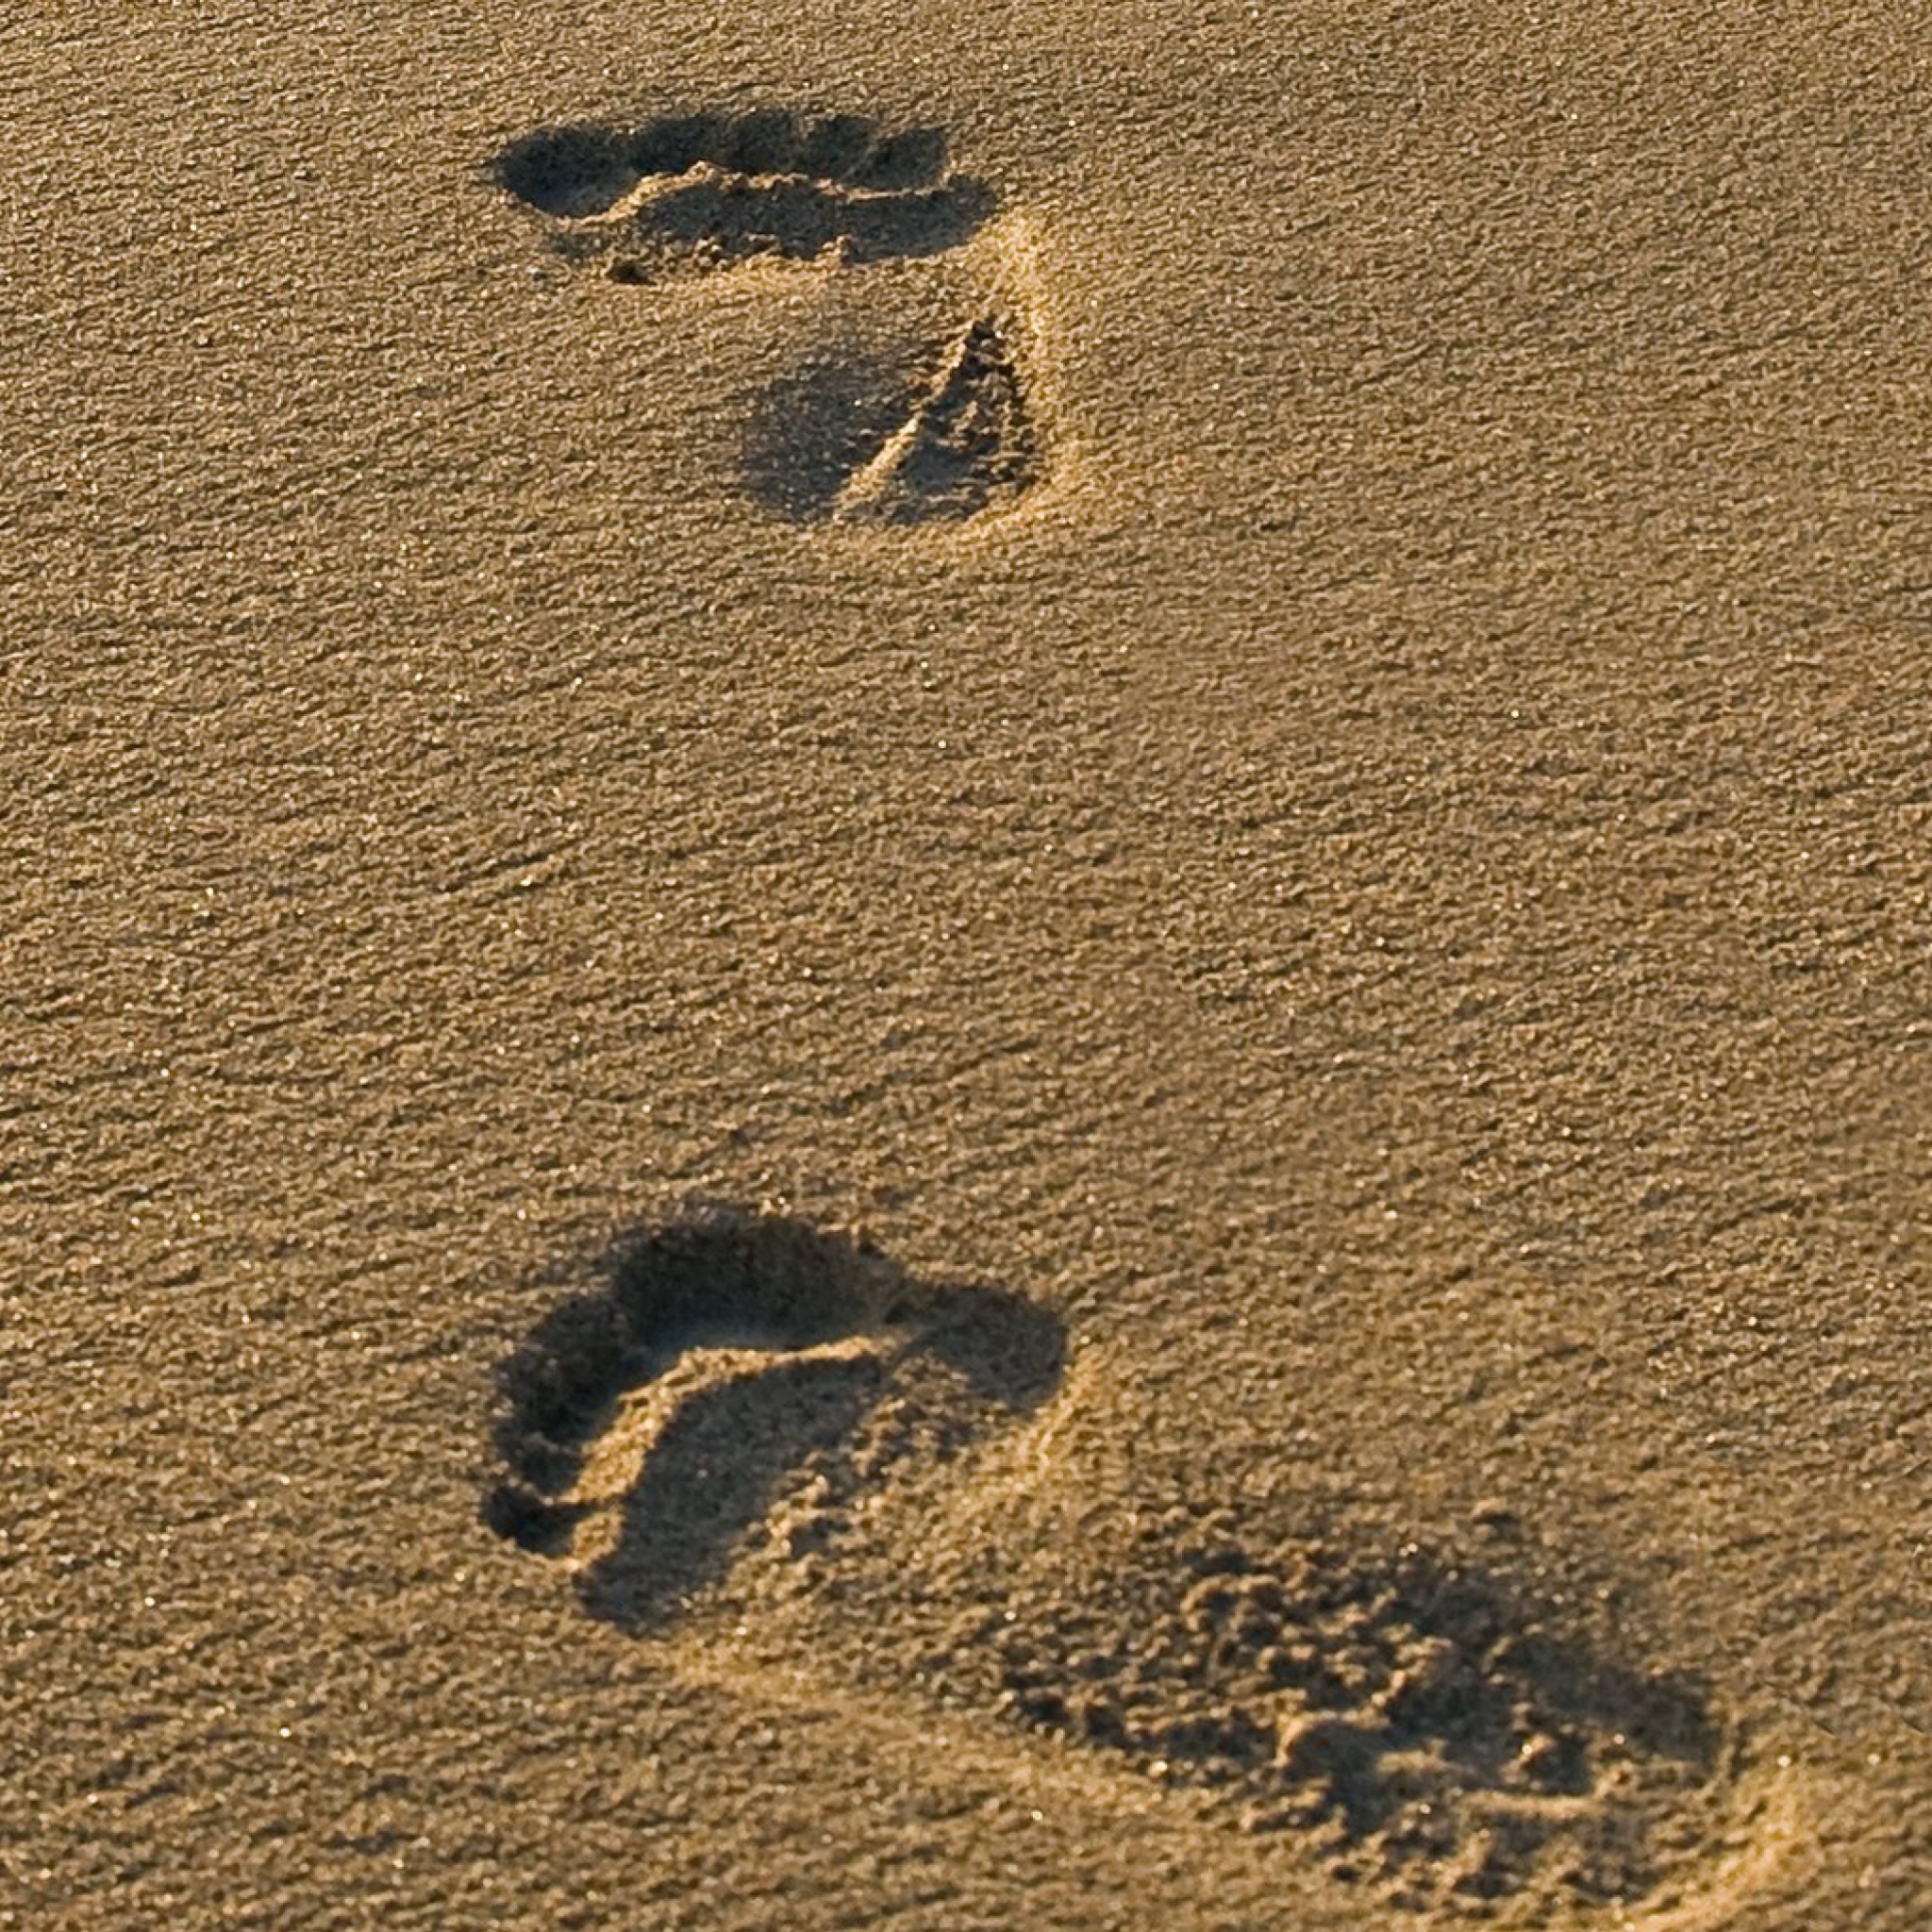 Обои Footprints On Sand 2048x2048